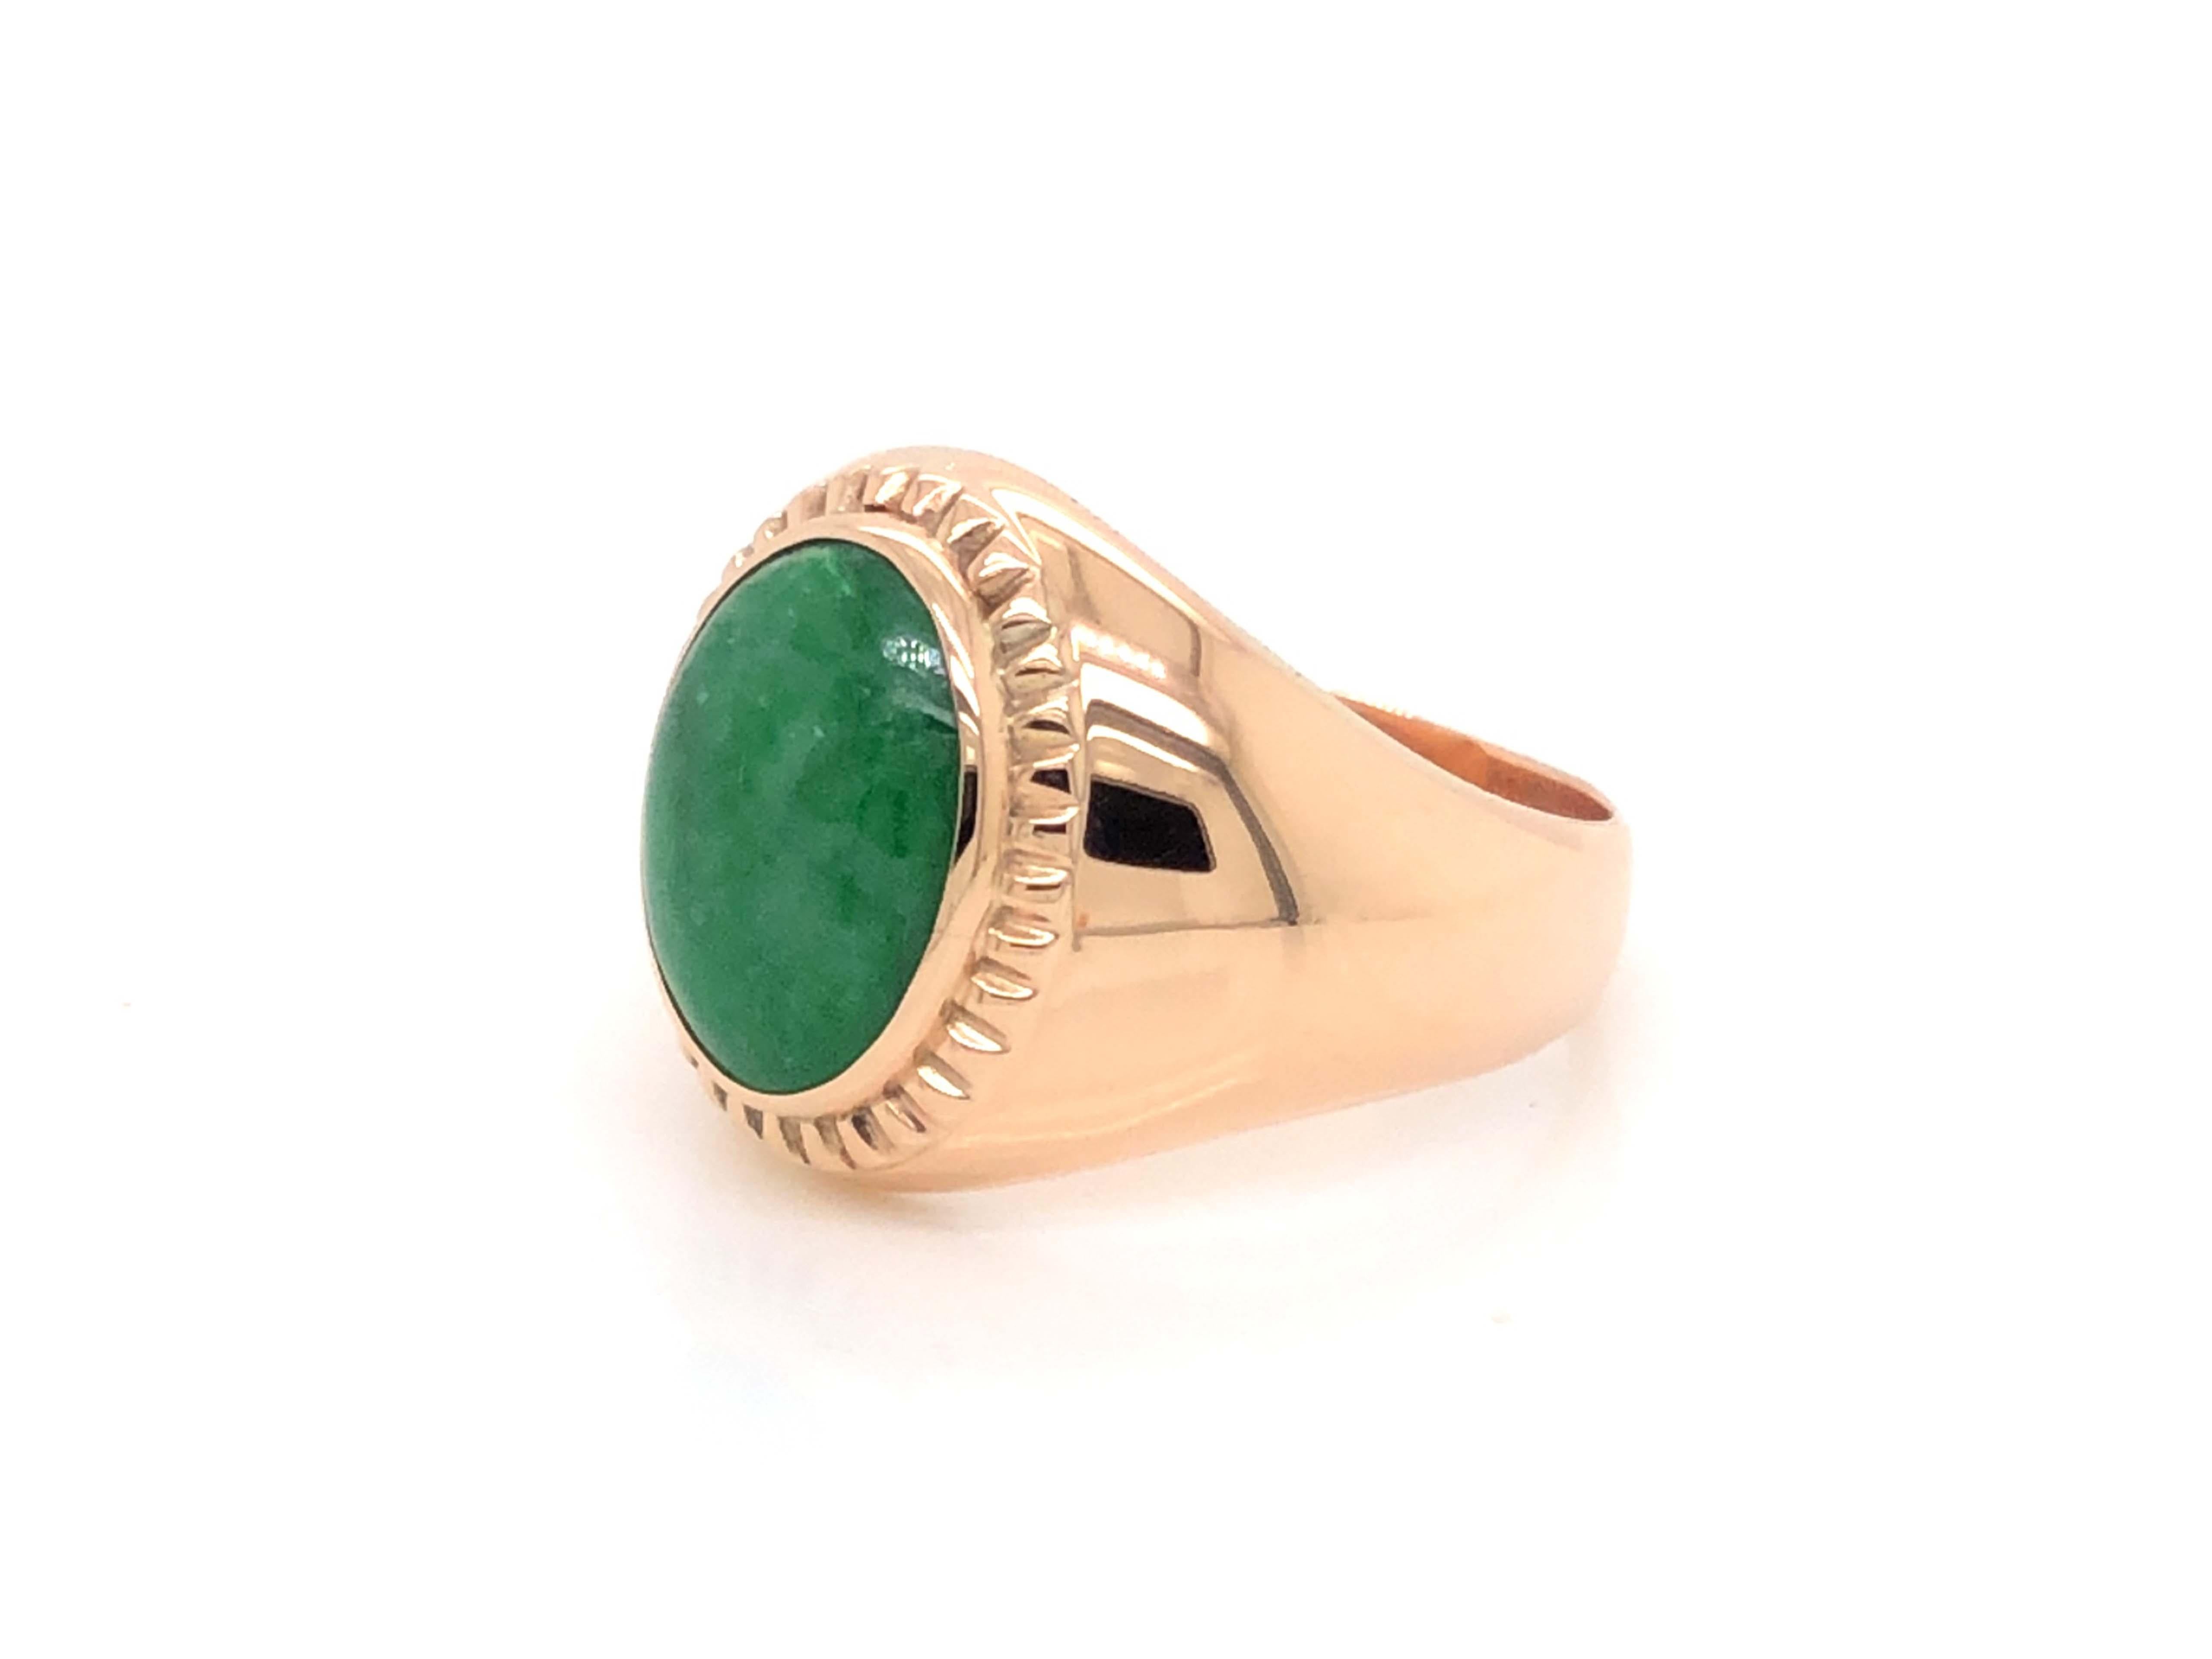 Oval Cut Vintage Men's Oval Cabochon Vivid Mottled Green Jade Ring - 14k Rose Gold